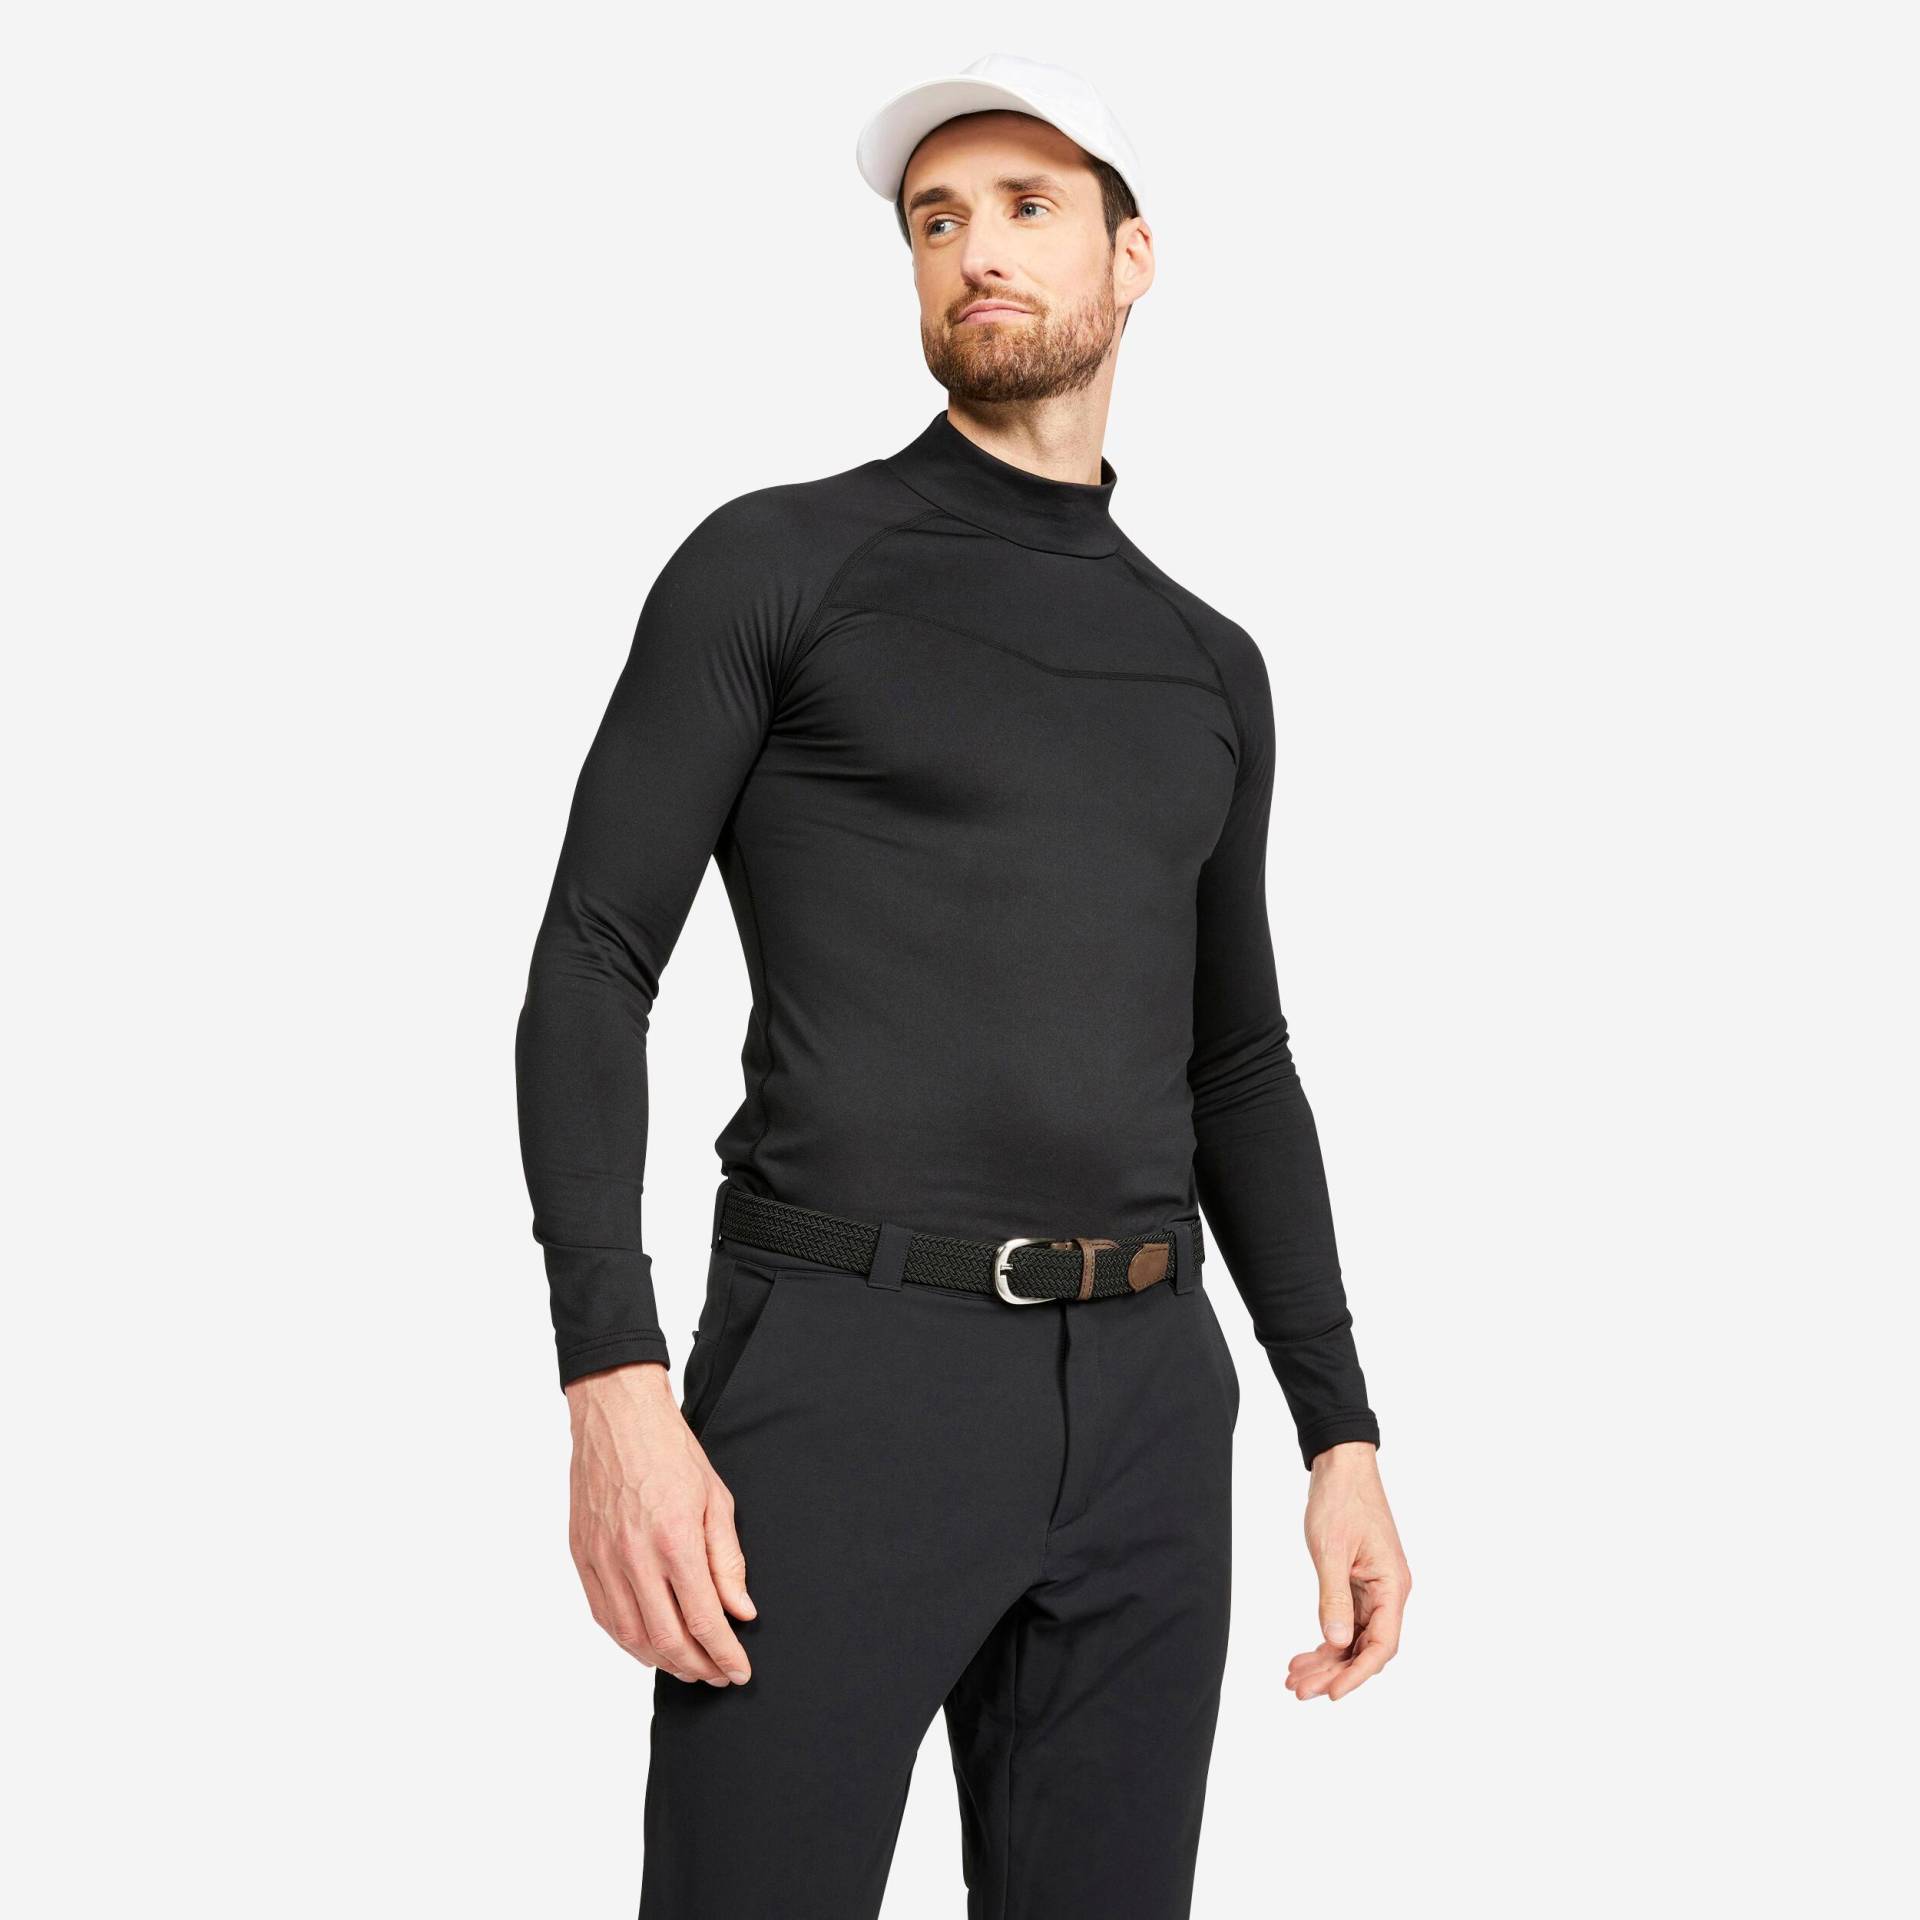 Unterhemd - Cw500 Herren Schwarz Leicht XL von INESIS